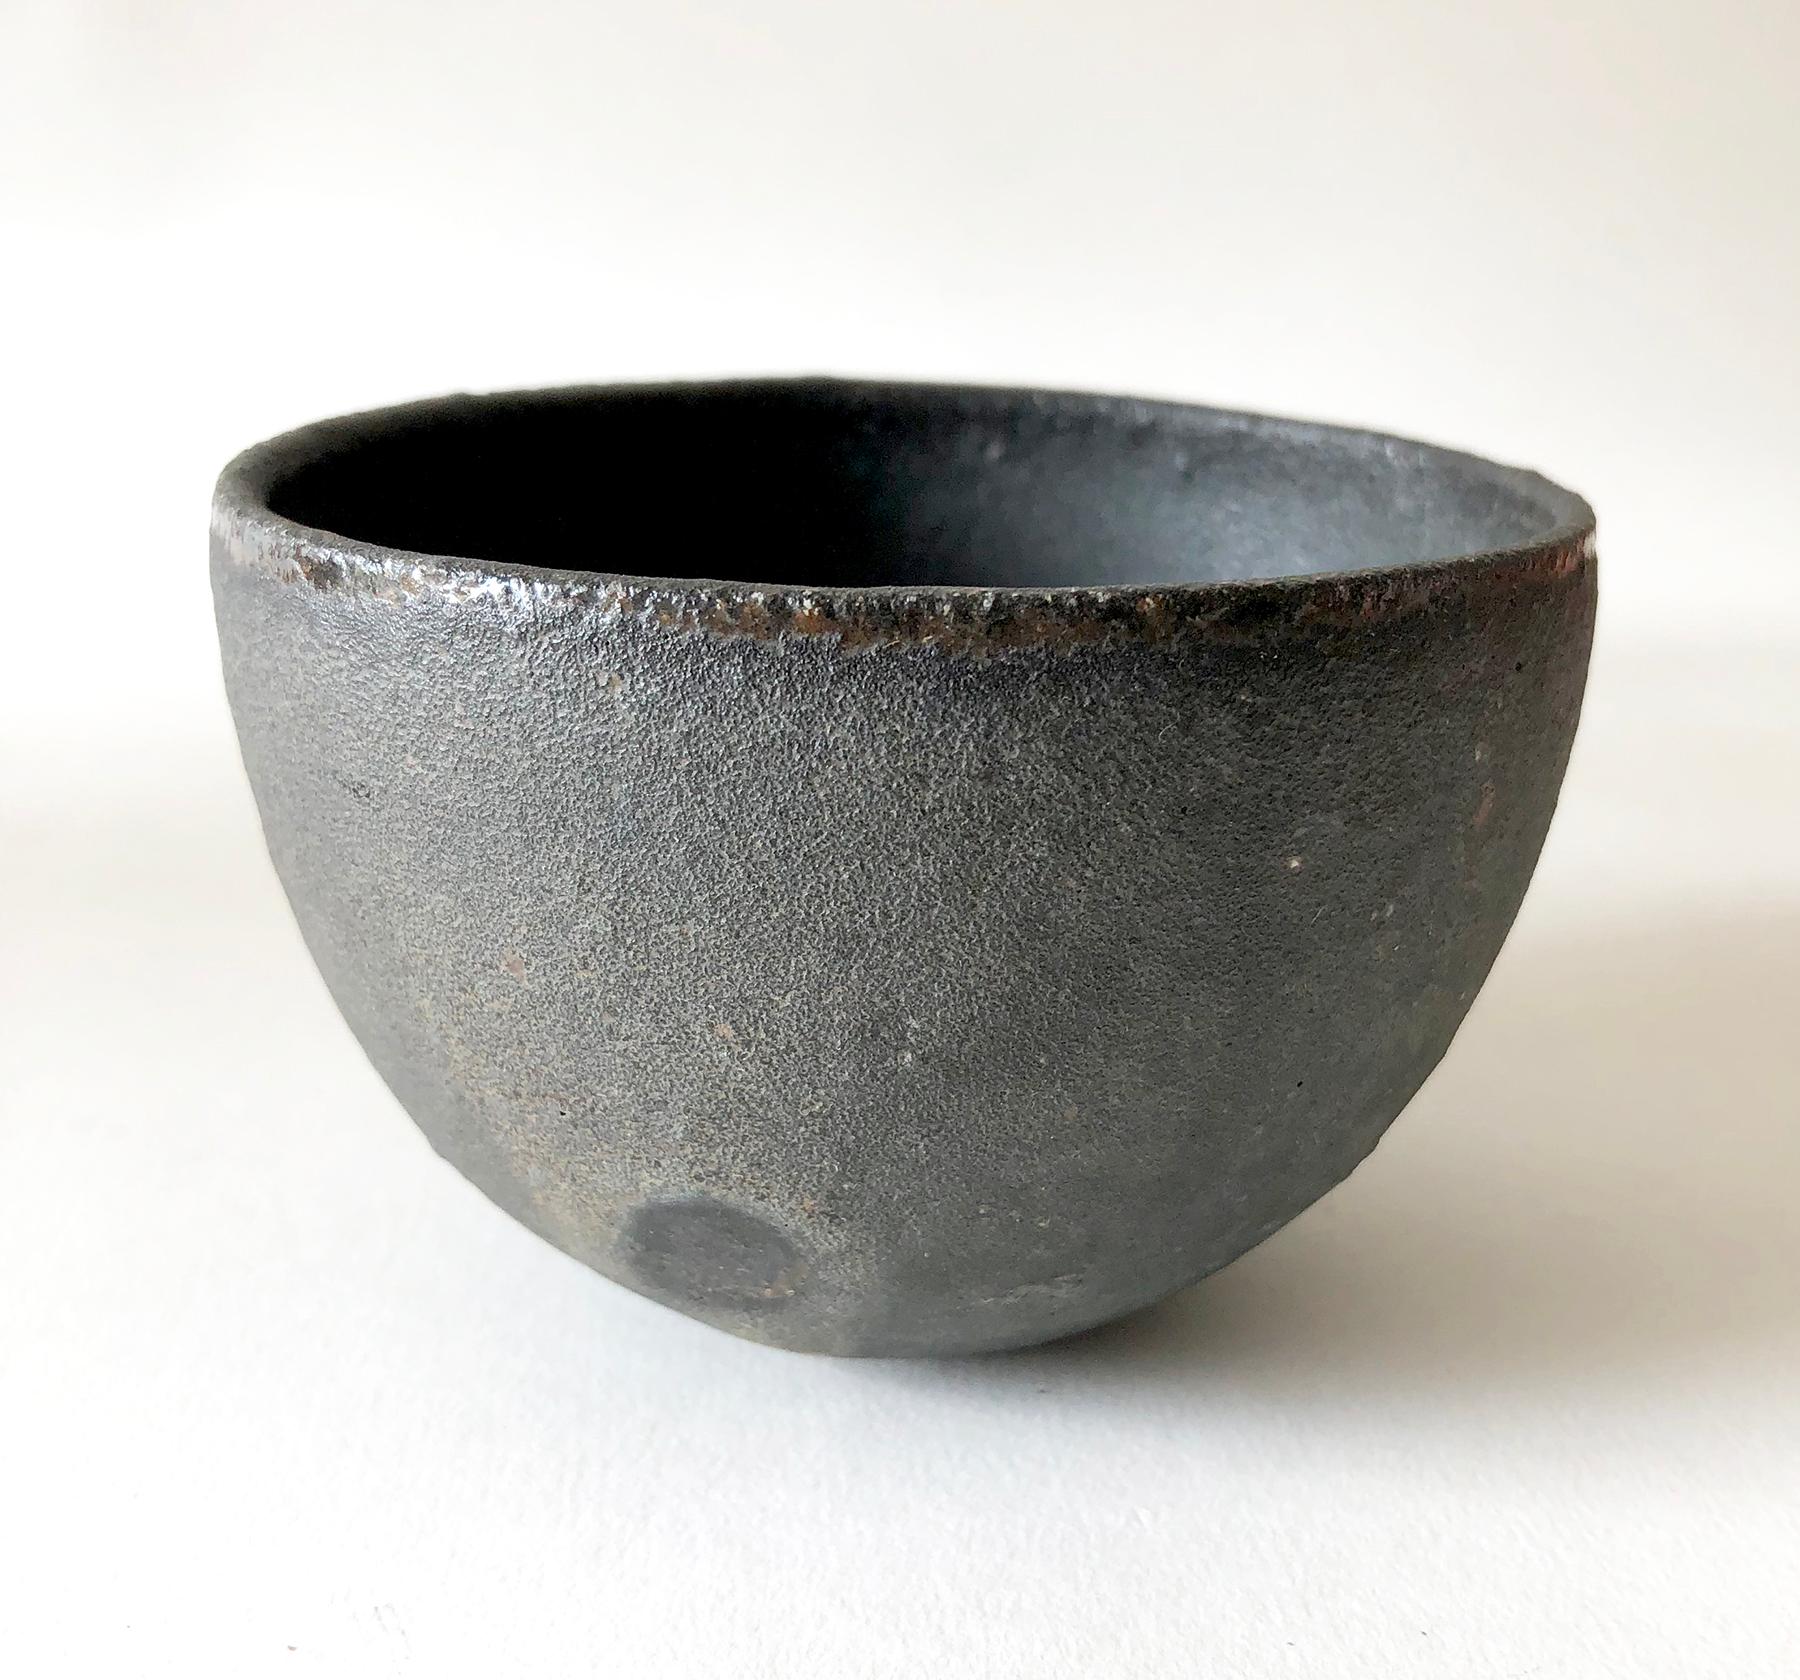 Black iron bowl created by Kan Ito of Okayama, Japan. Bowl measures 2.5